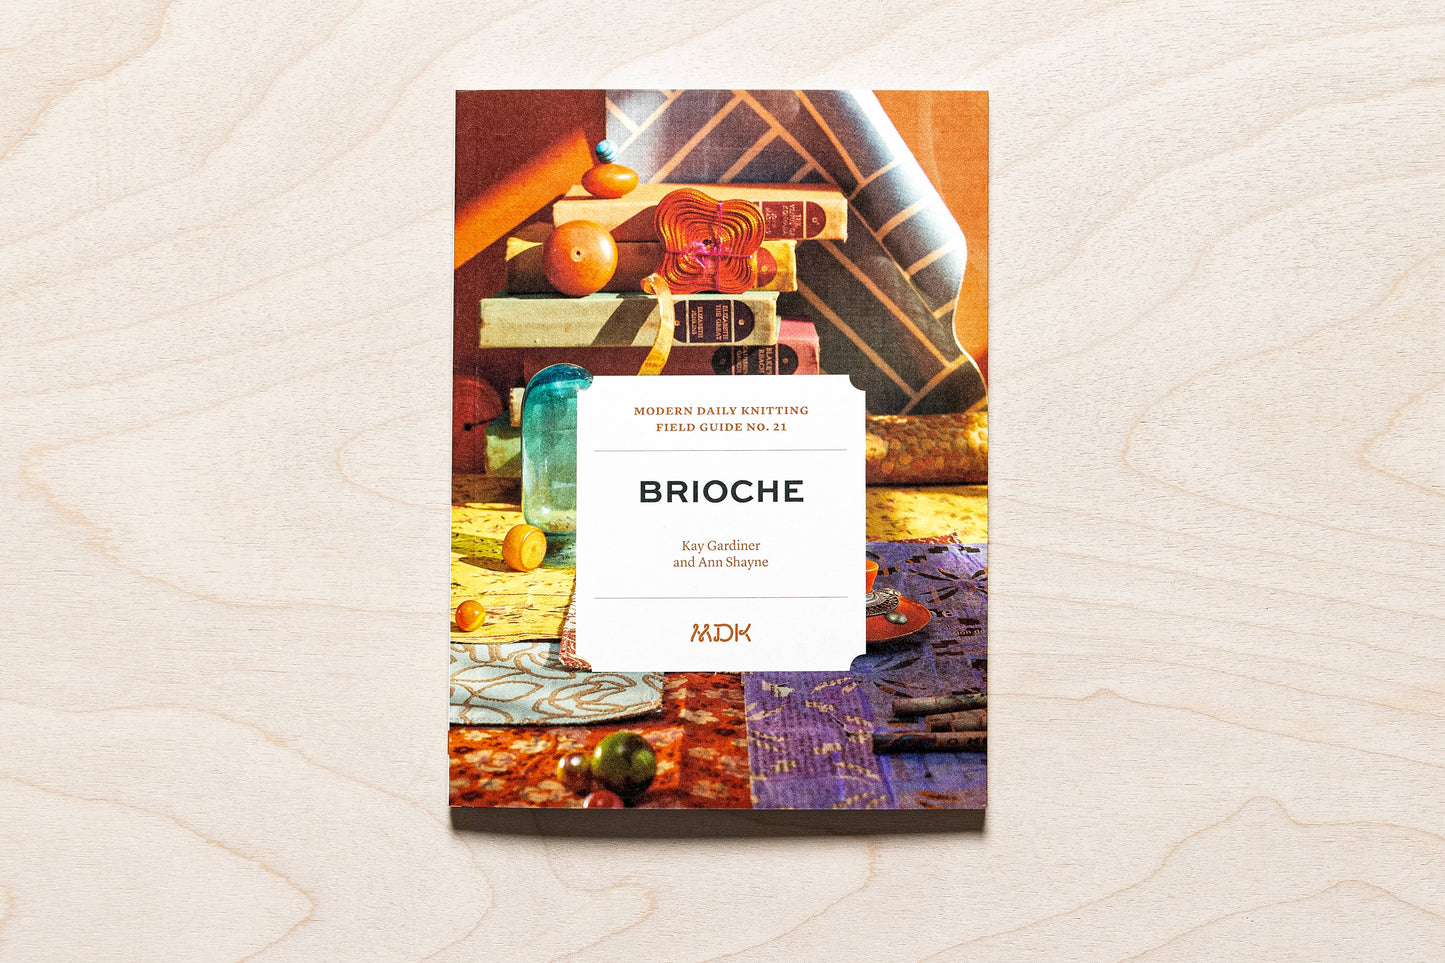 MDK Field Guide No. 21: Brioche